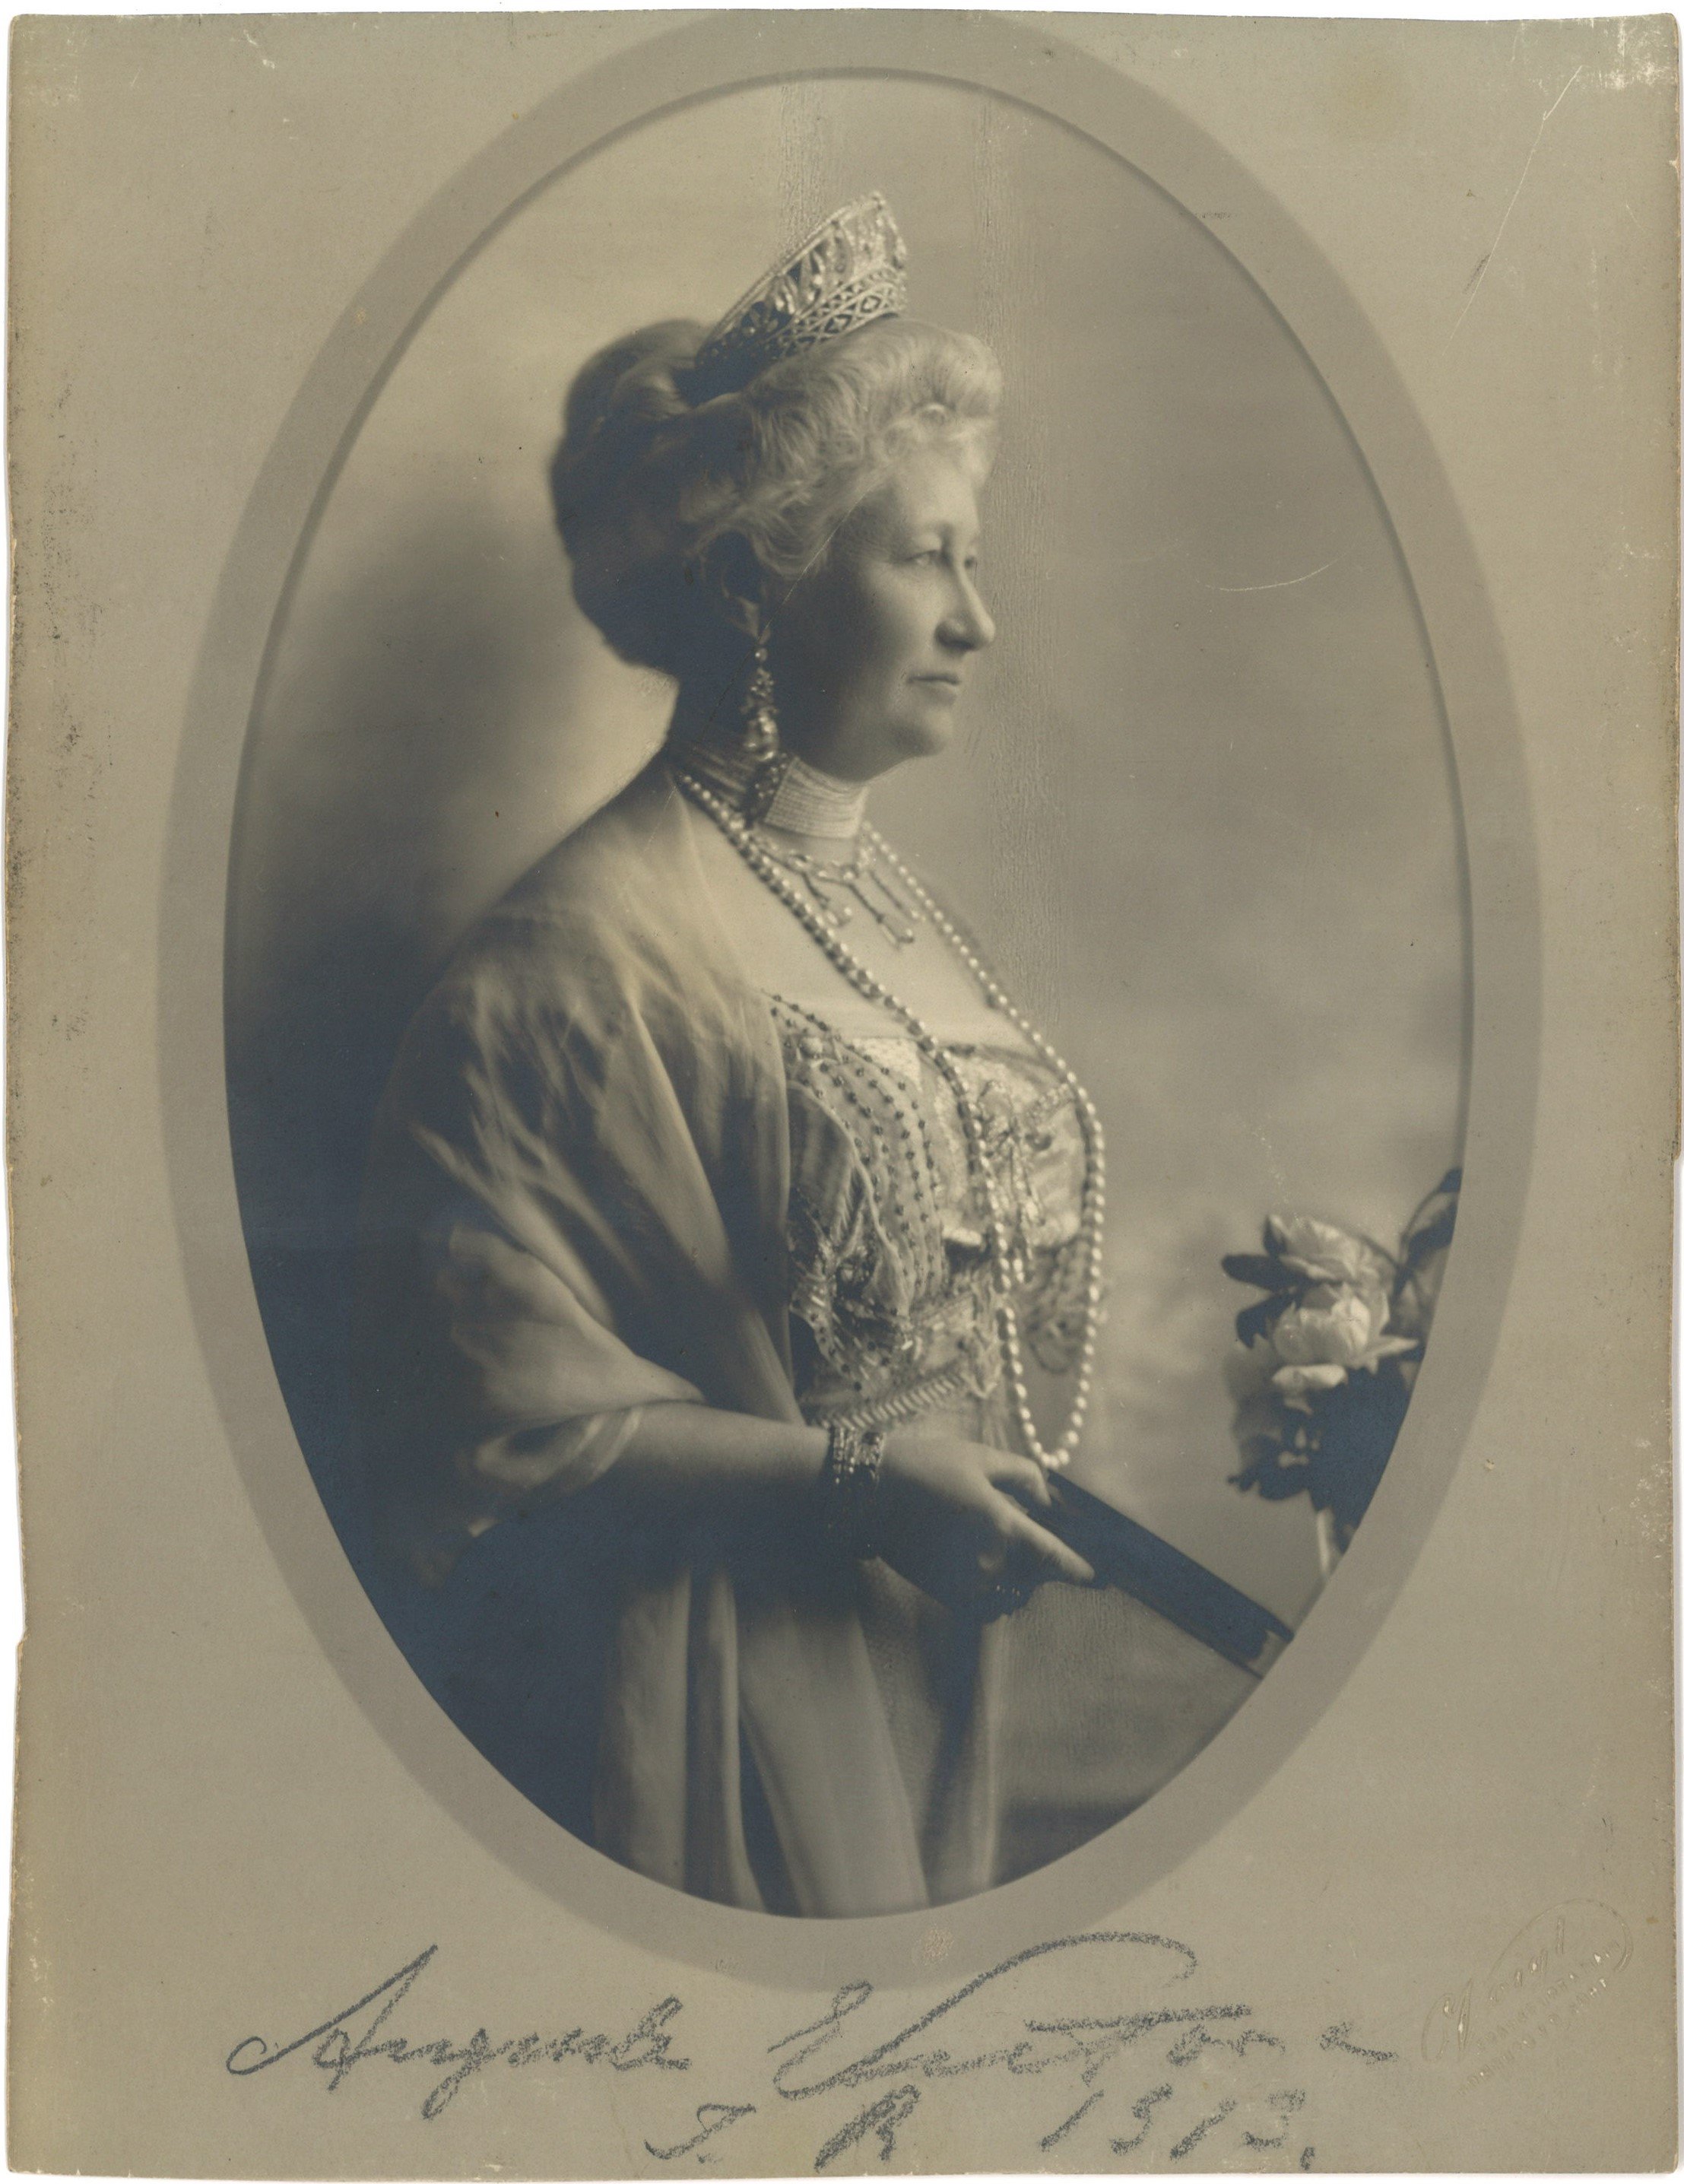 Auguste Viktoria (1858-1921), Deutsche Kaiserin, Königin von Preußen (Landesgeschichtliche Vereinigung für die Mark Brandenburg e.V., Archiv CC BY)